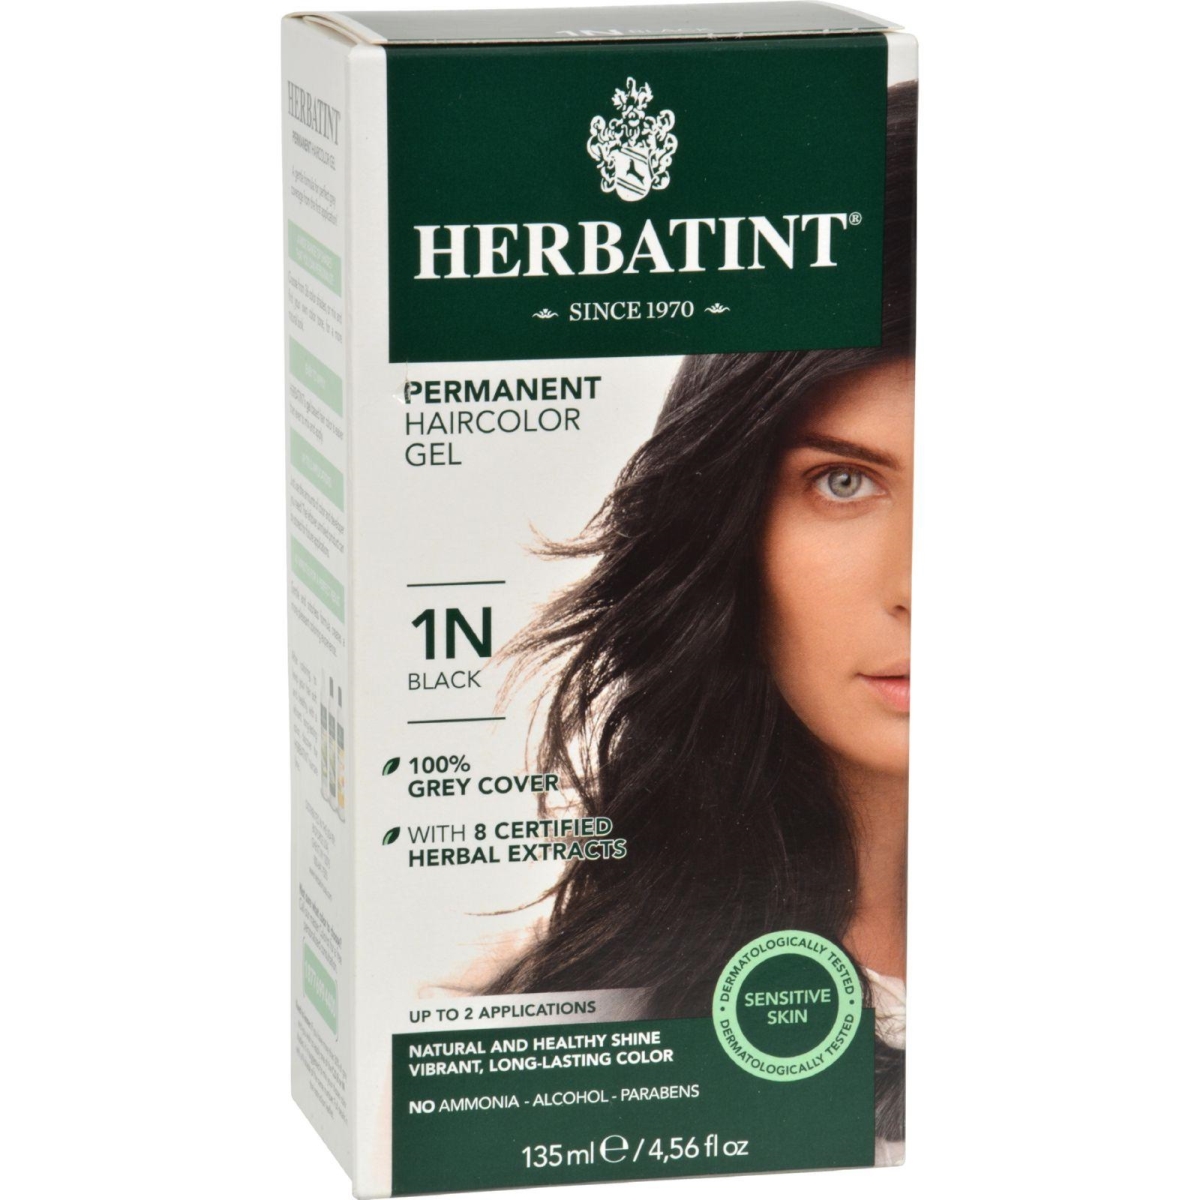 Hg0226589 135 Ml Permanent Herbal Haircolor Gel, 1n Black